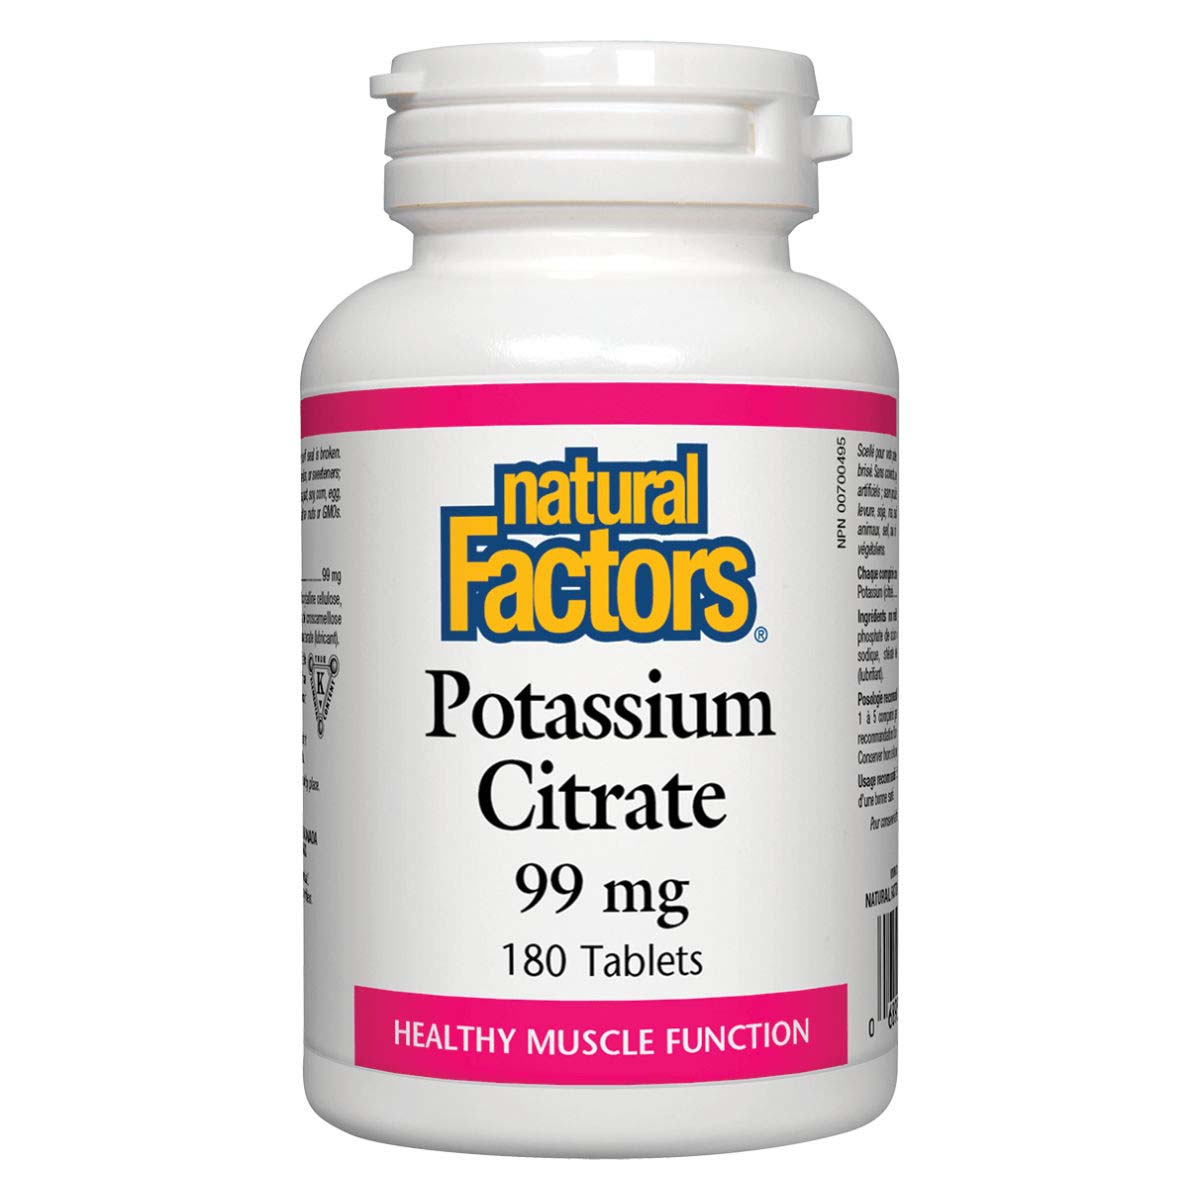 Natural Factors Potassium Citrate 180 Tablets 99 mg